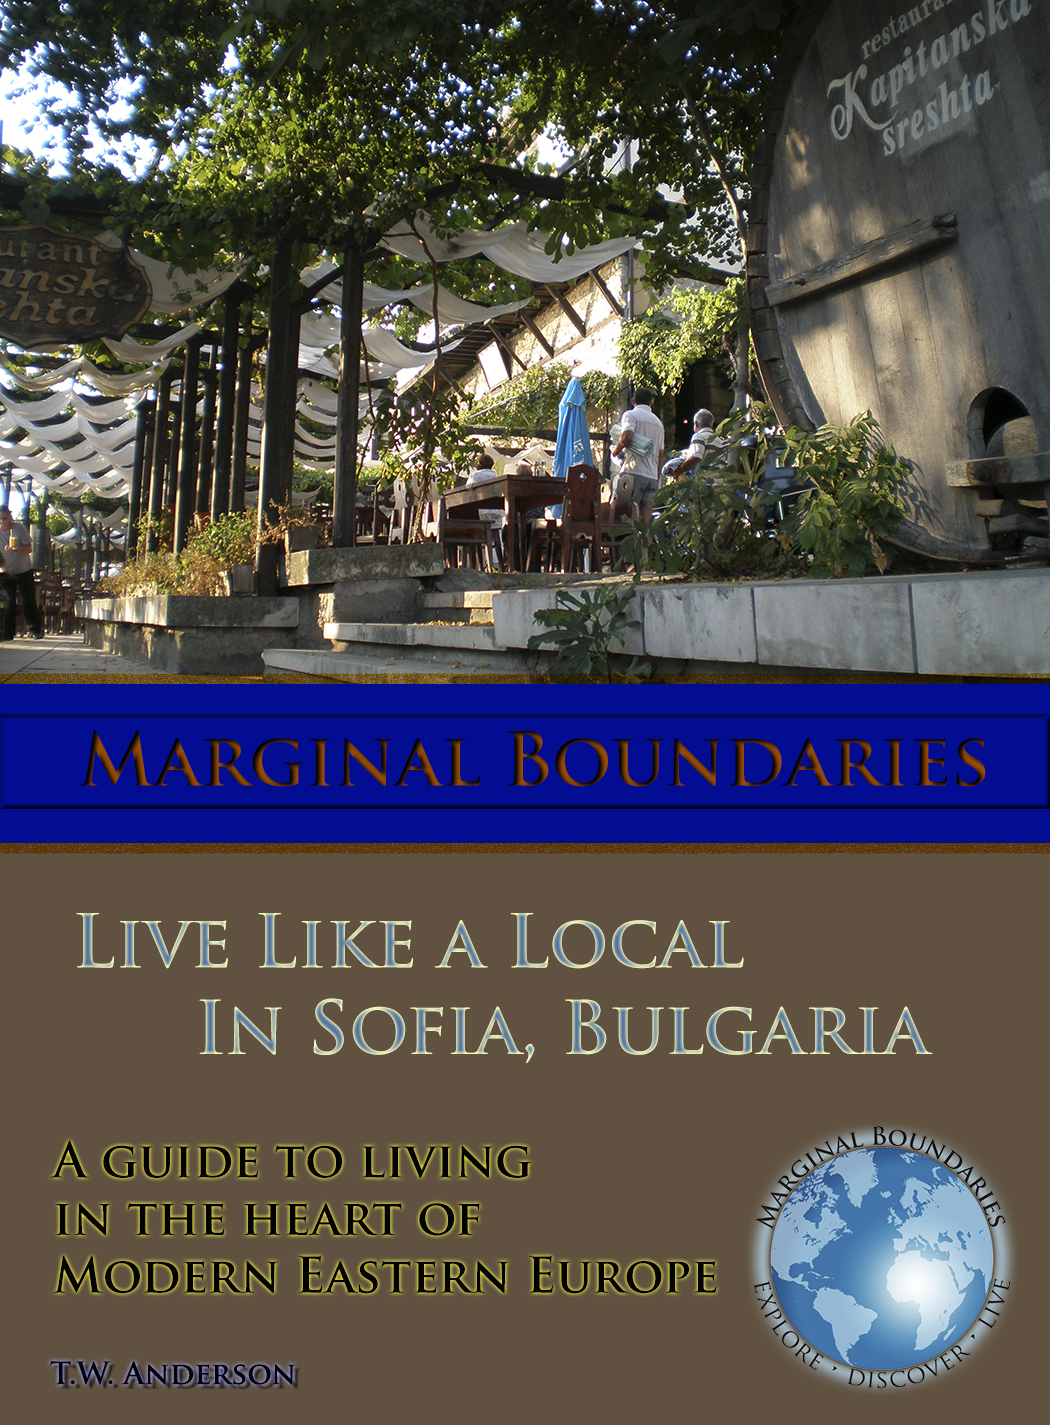 Sofia, Bulgaria travel guide